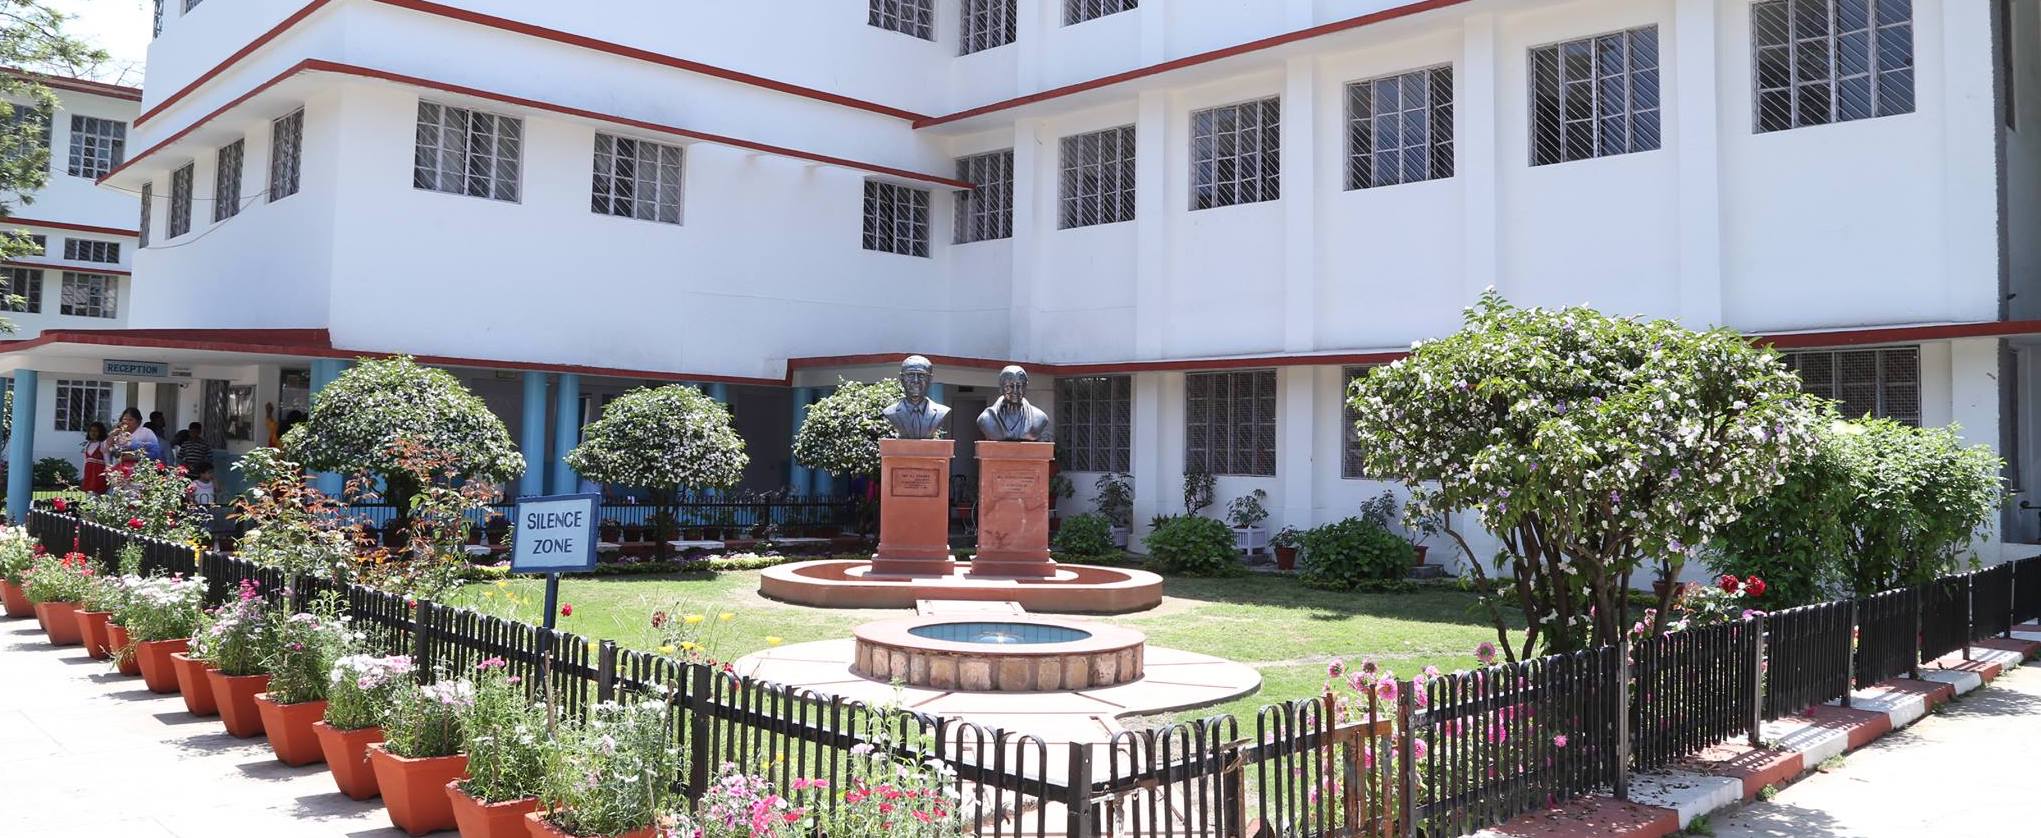 Scholars Home , One of the 17 Best schools in Dehradun